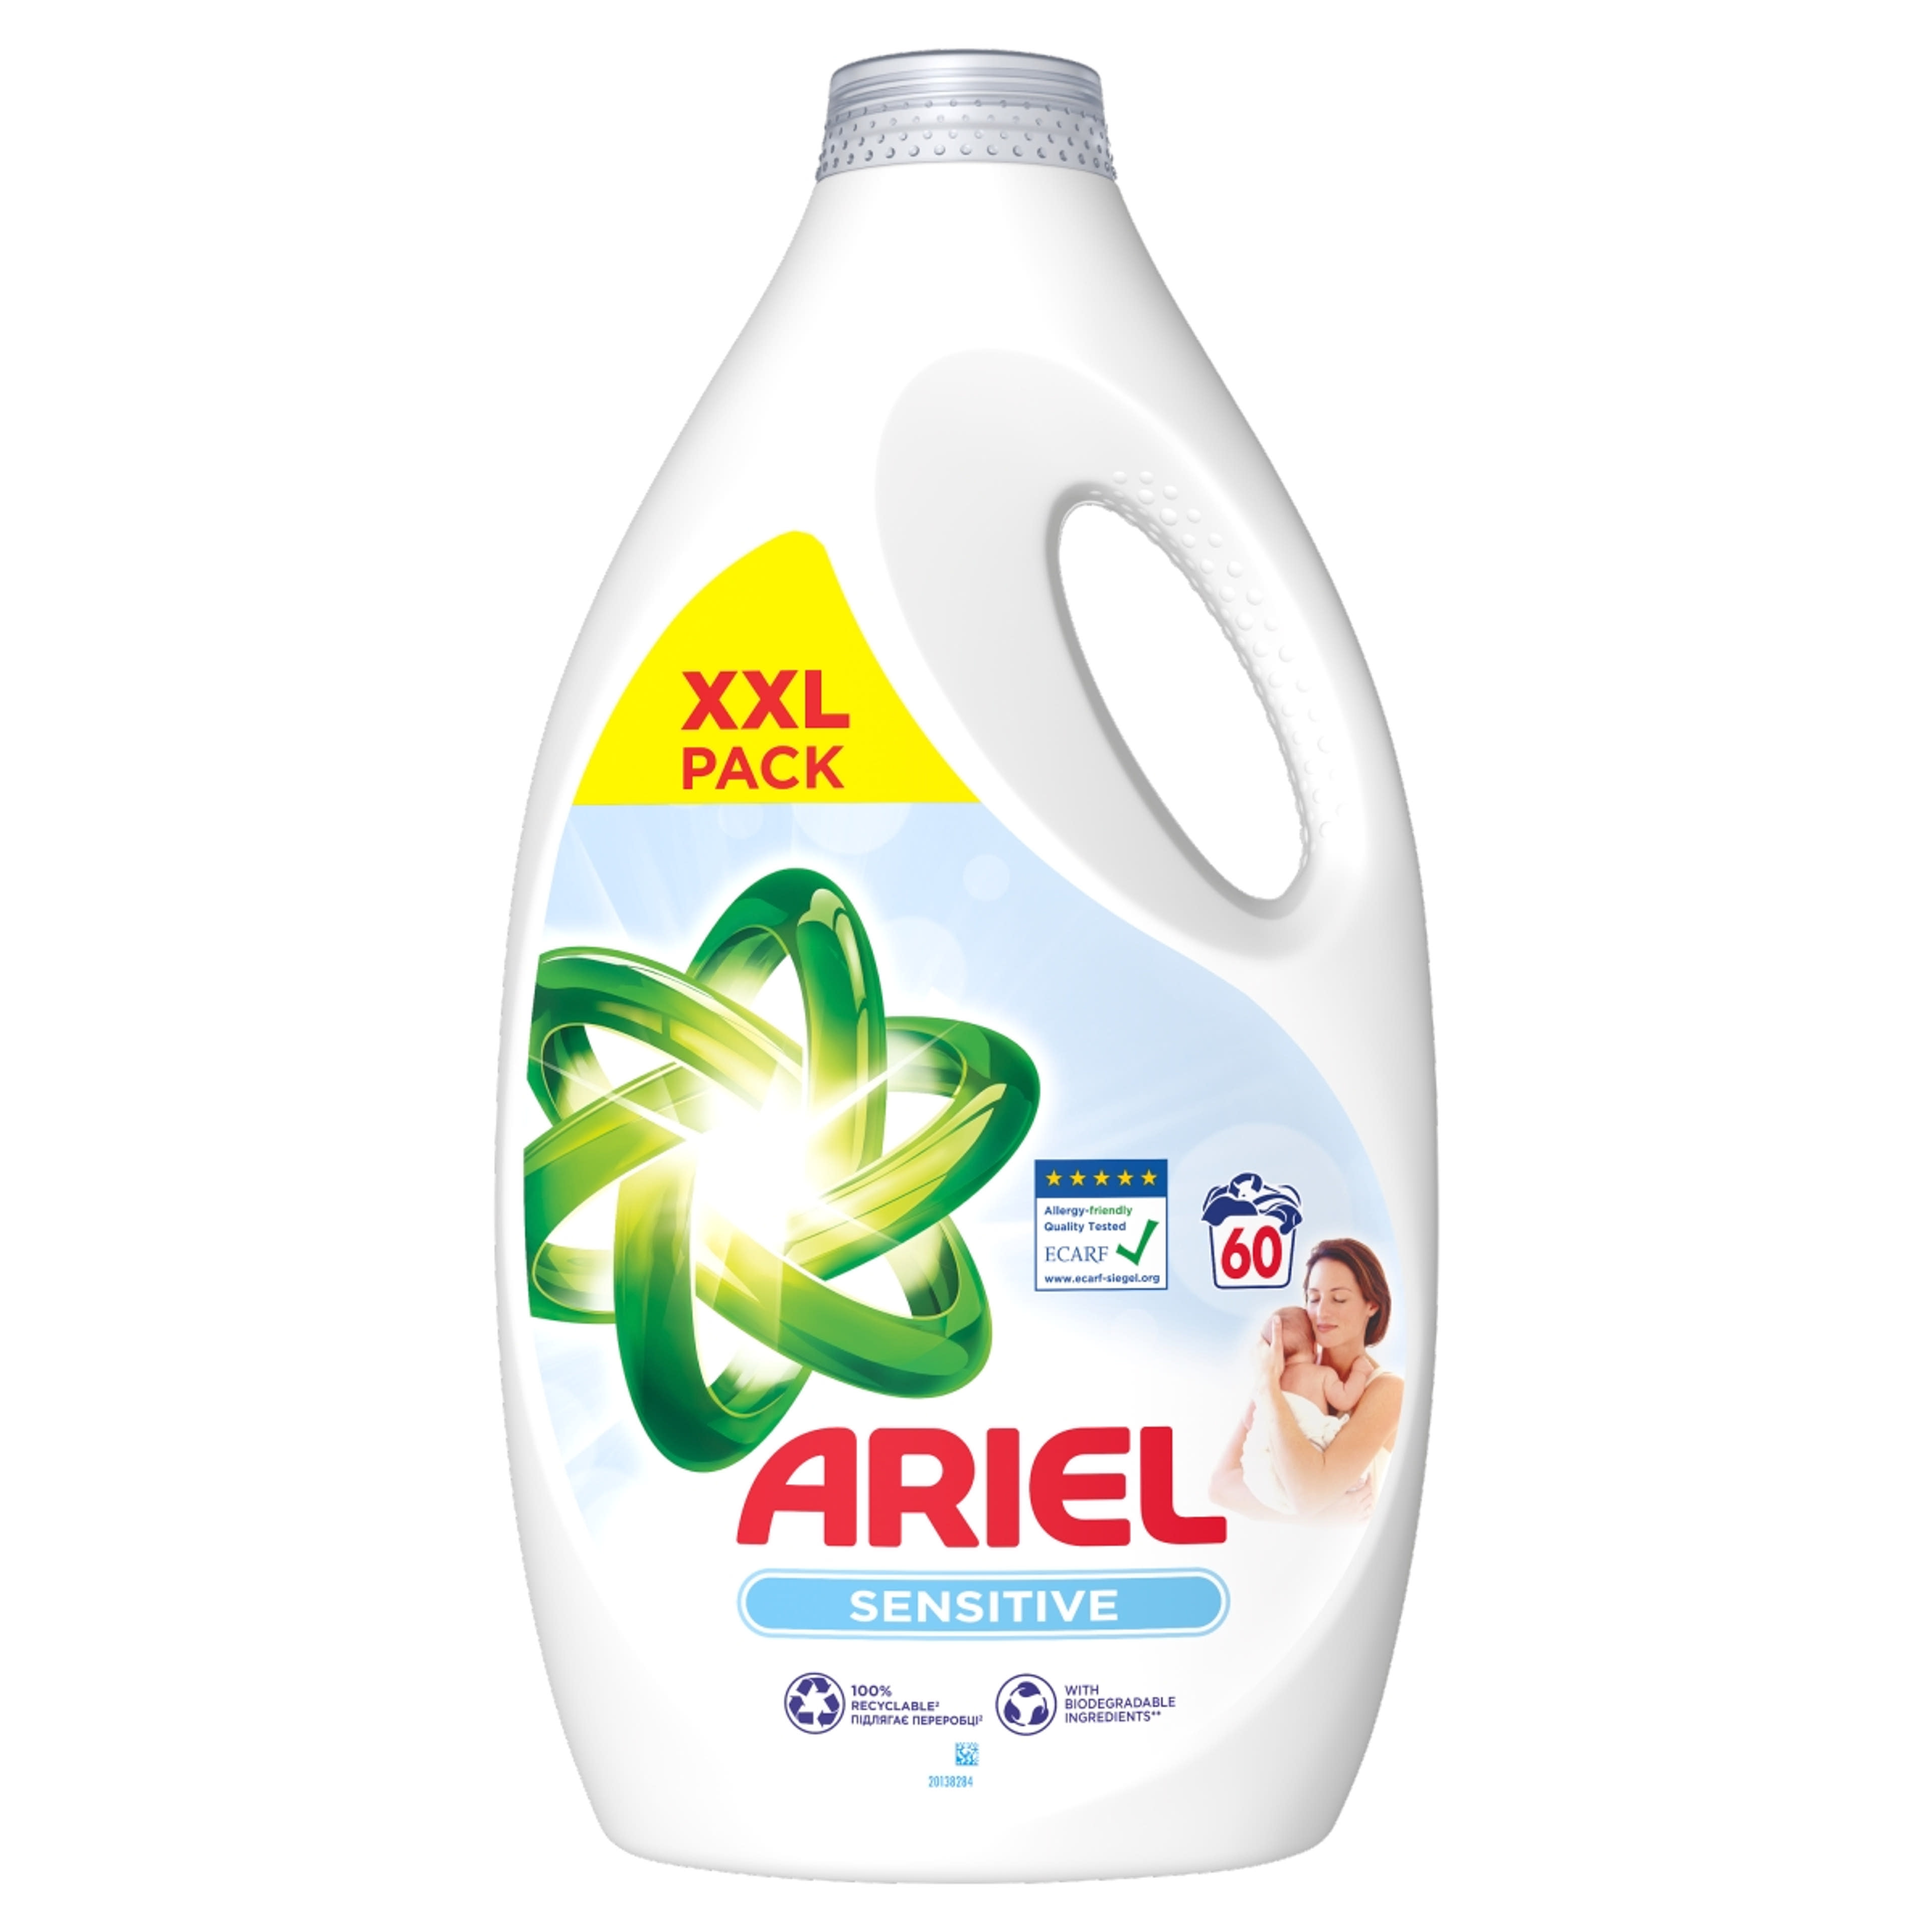 Ariel Sensitive Skin Clean & Fresh folyékony mosószer 60 mosáshoz - 3000 ml-1